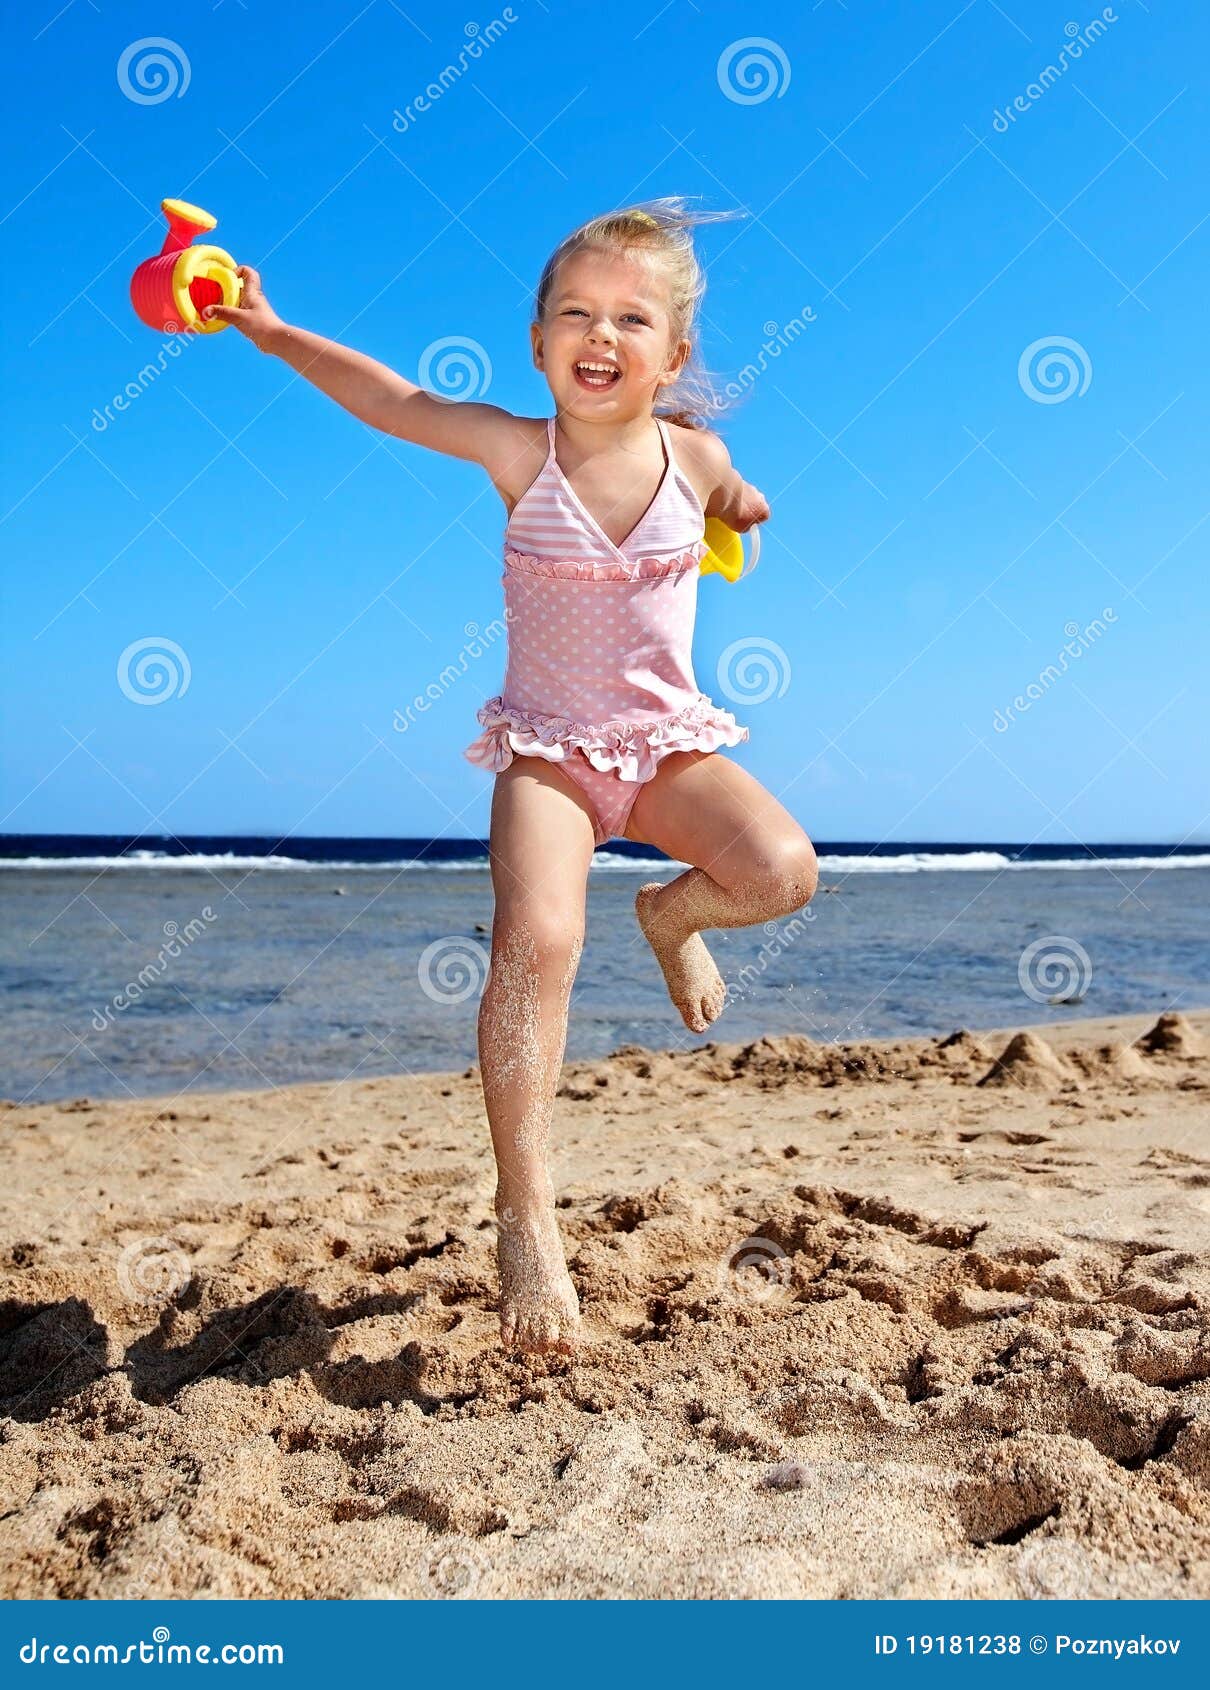 дети на голом пляже фото 20